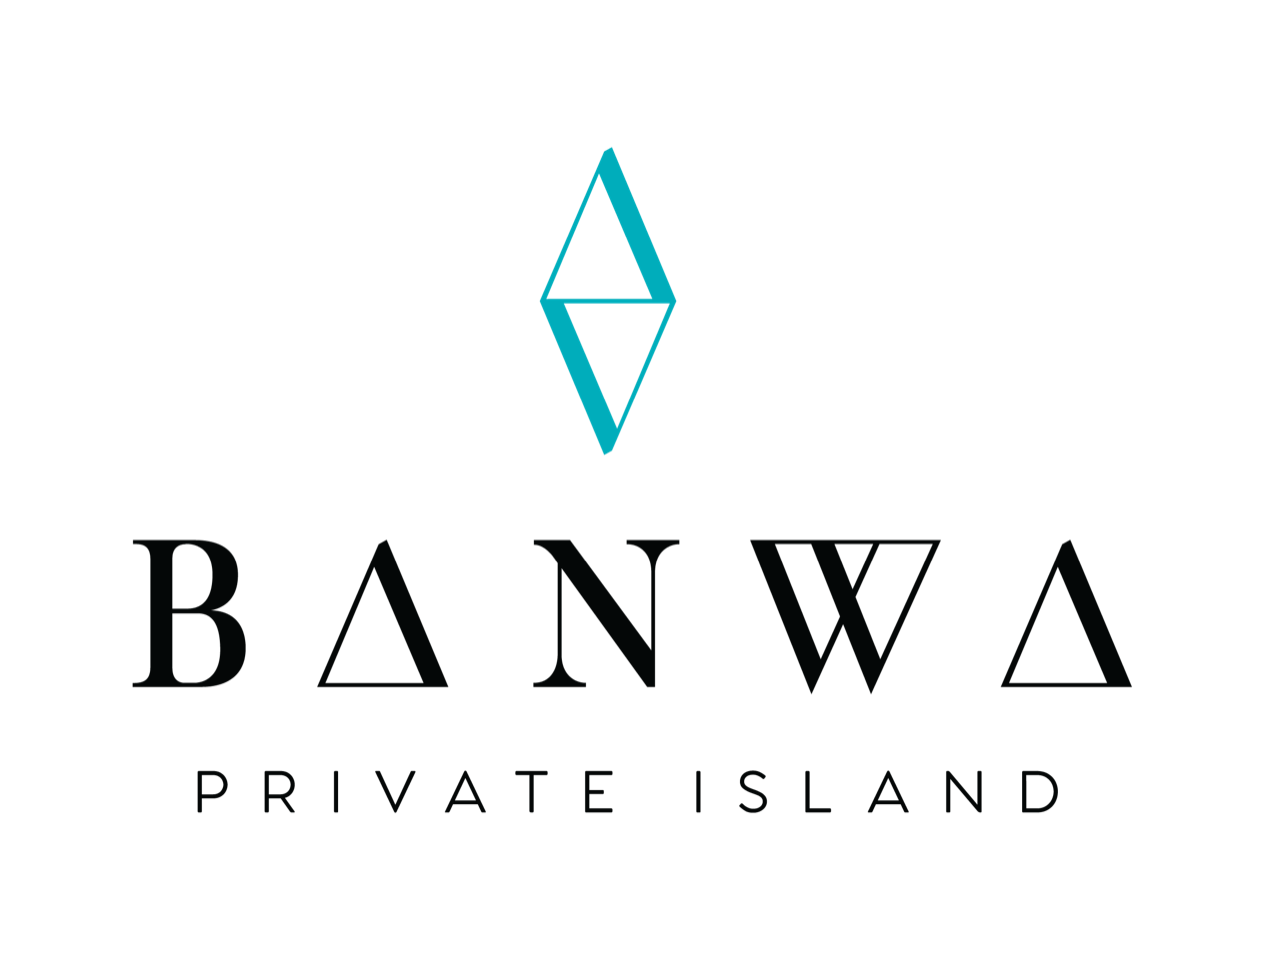 Banwa Private Island